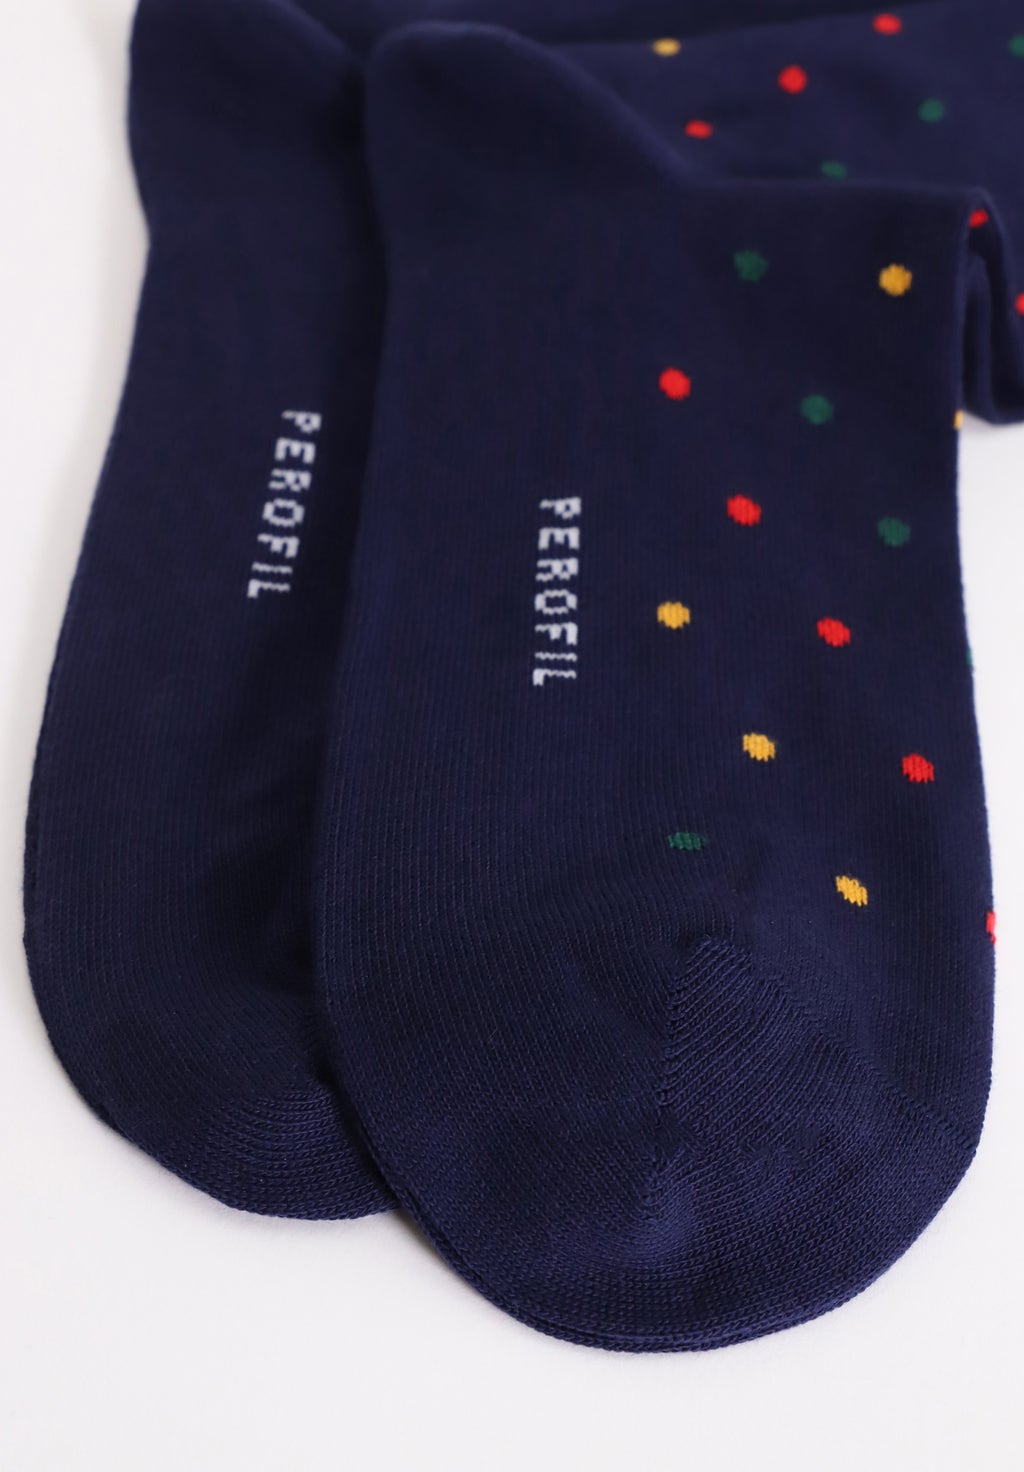 Men's short winter cotton polka dot socks duo pack